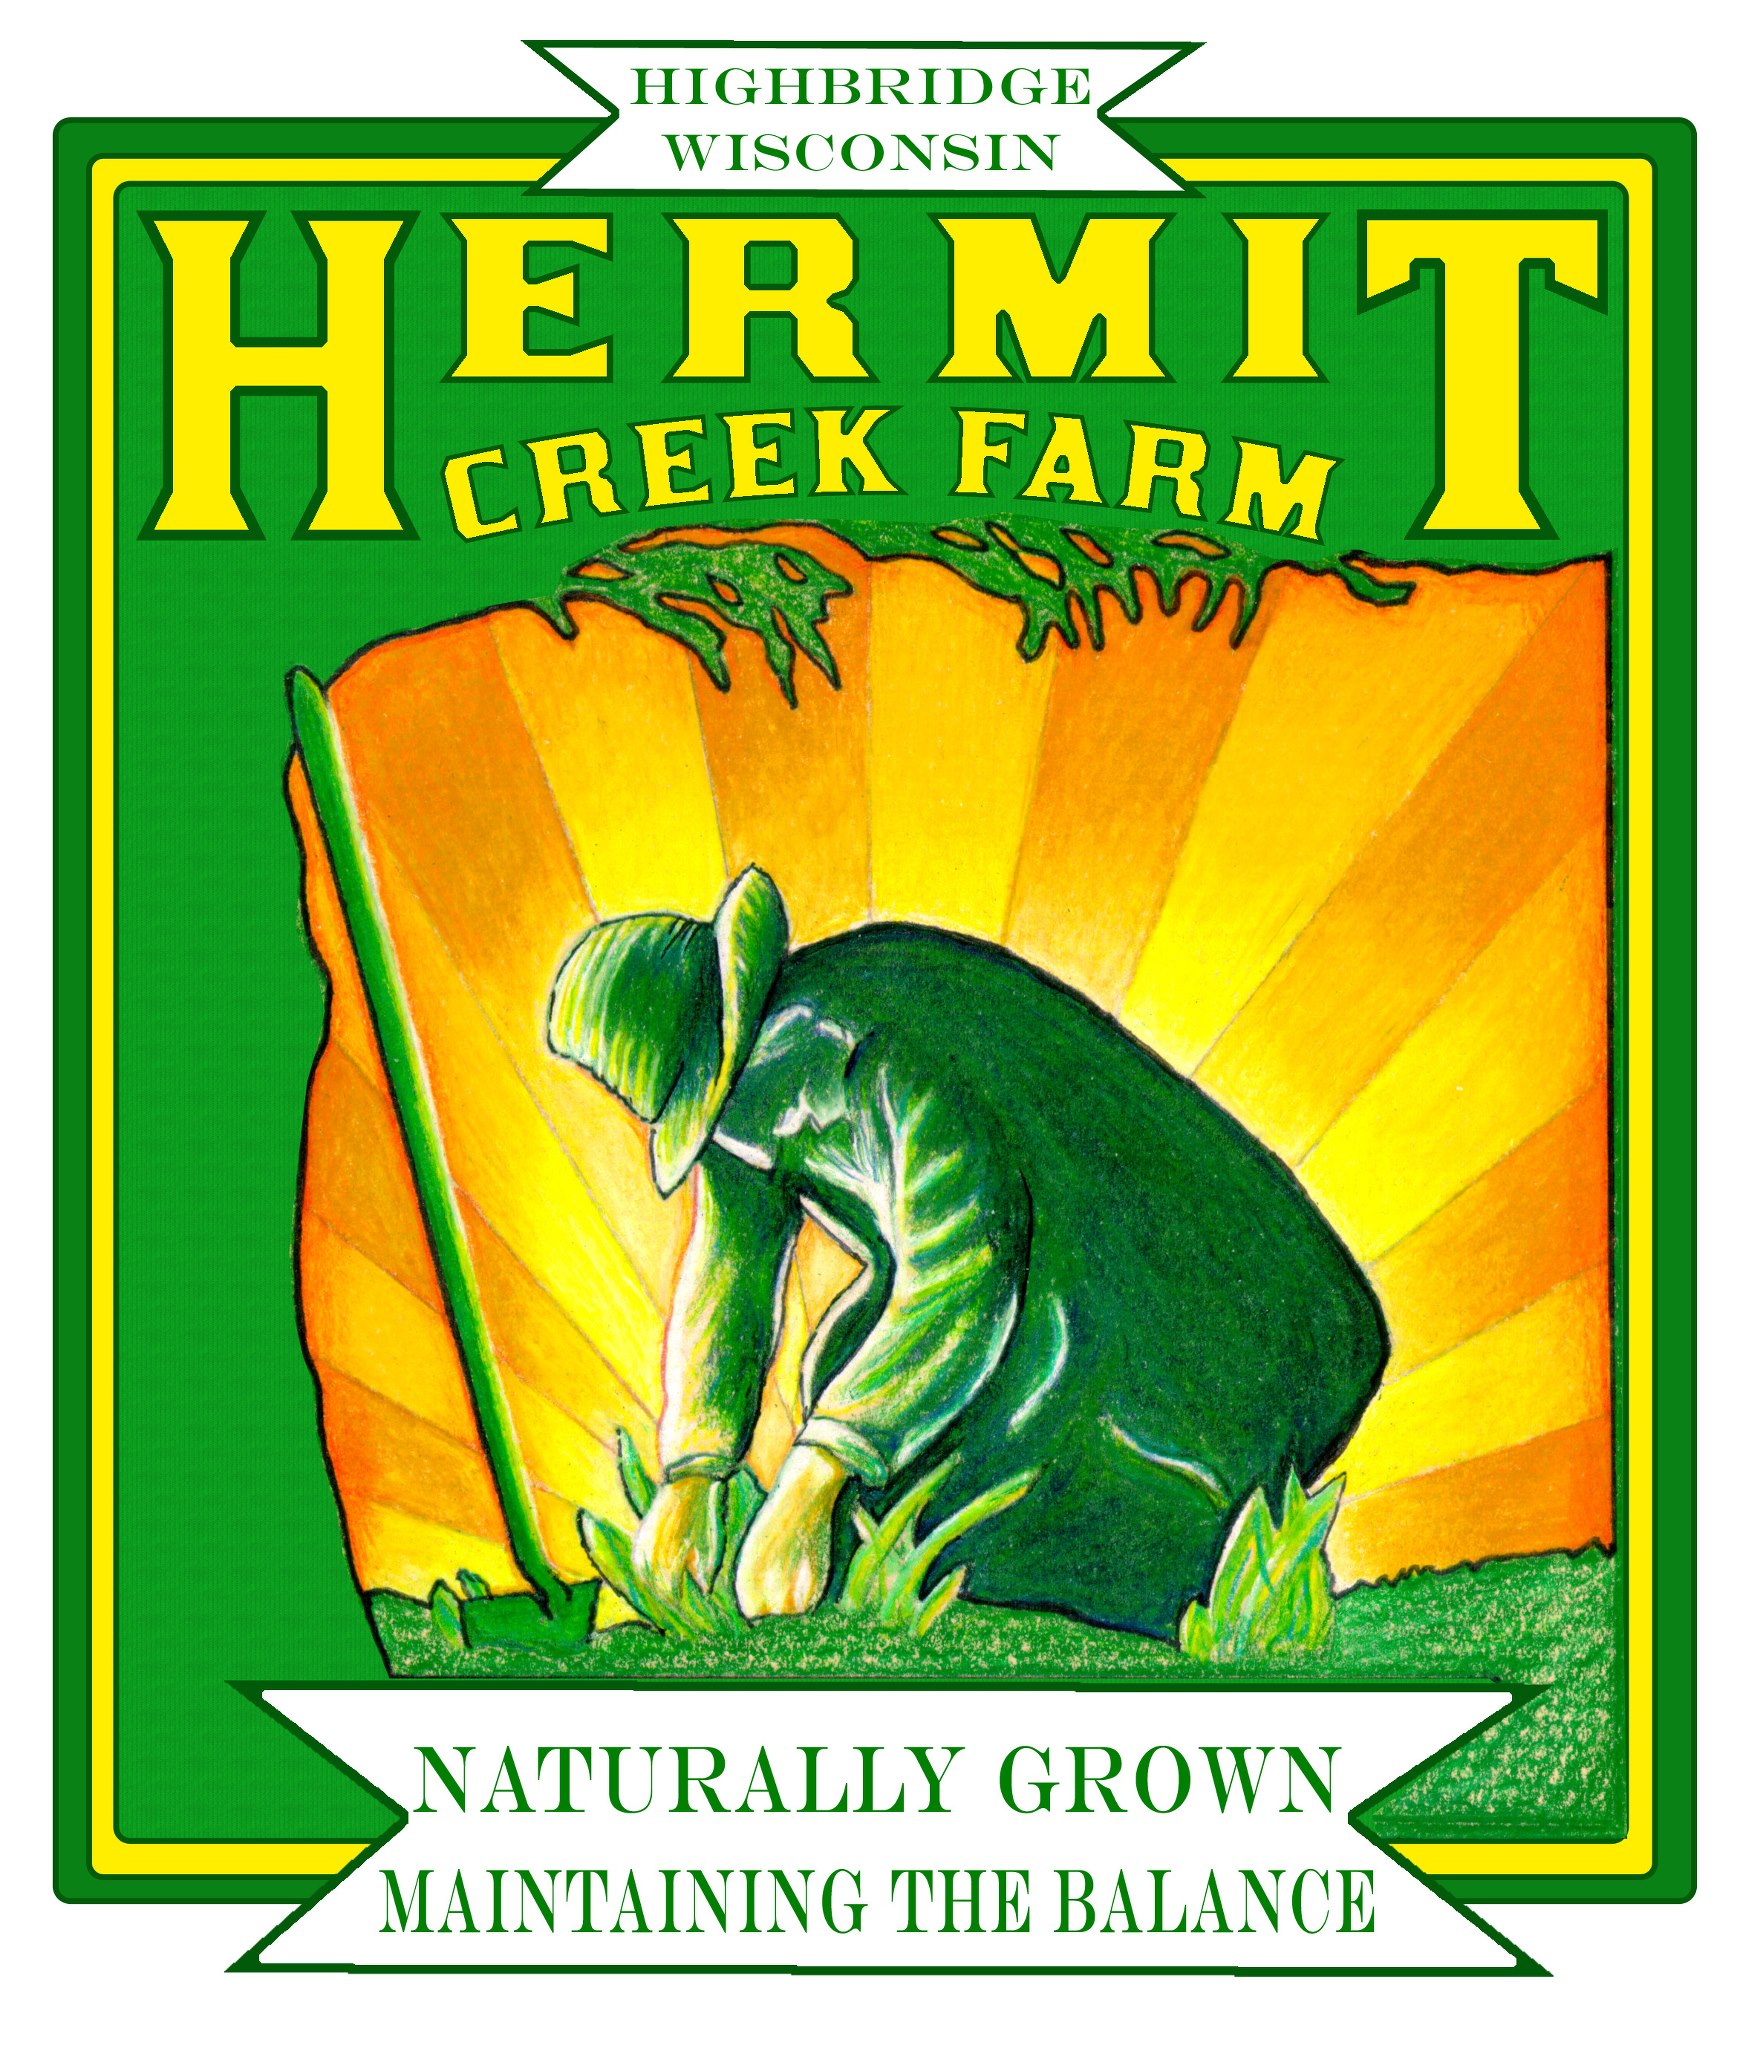 hermit creek farm